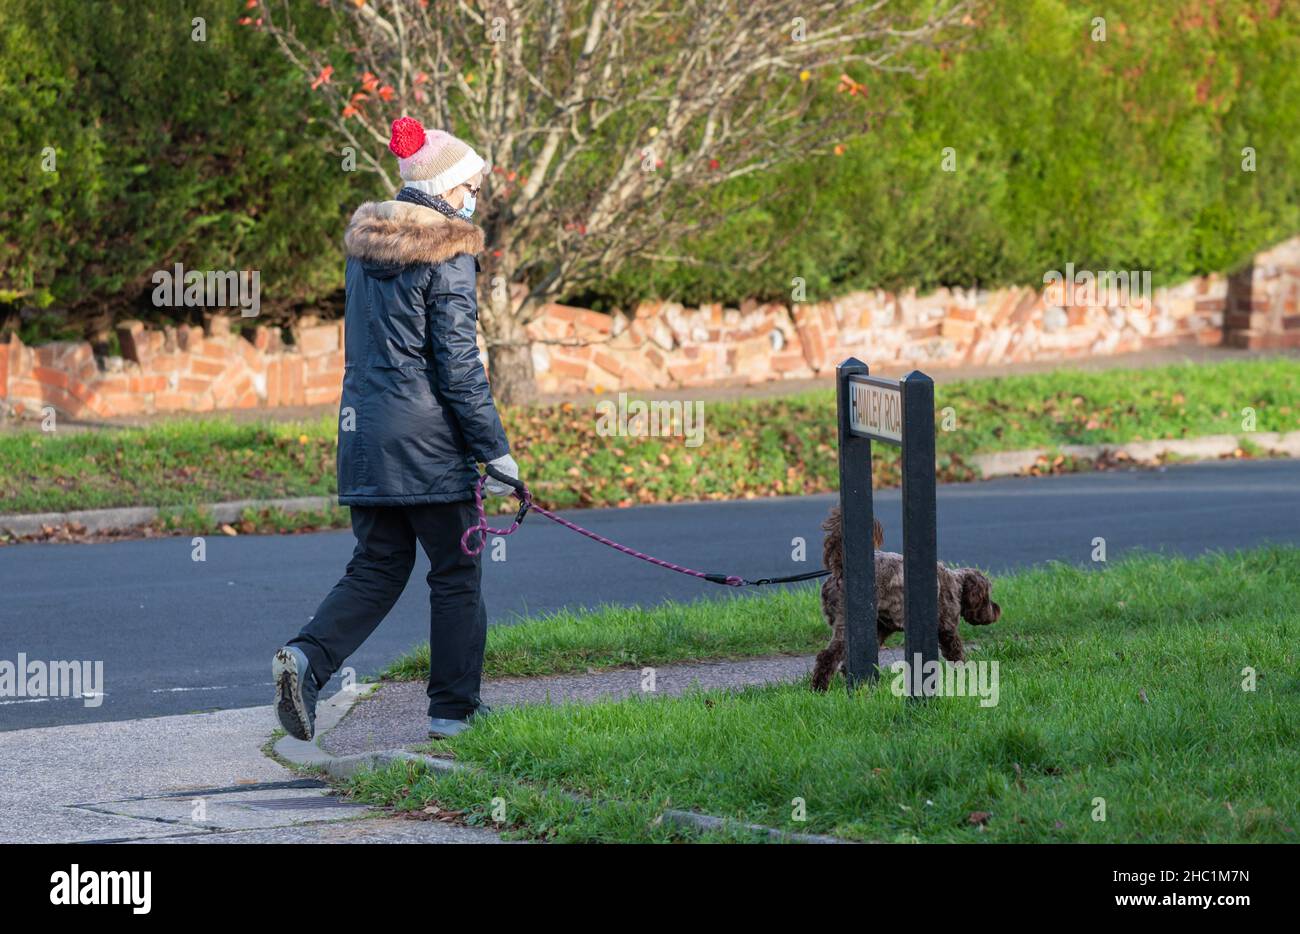 Cane da passeggio signora anziana in inverno, con cappello e cappotto e maschera facciale o copertura per la protezione da coronavirus COVID-19. Indossare maschera esterna, Regno Unito Foto Stock